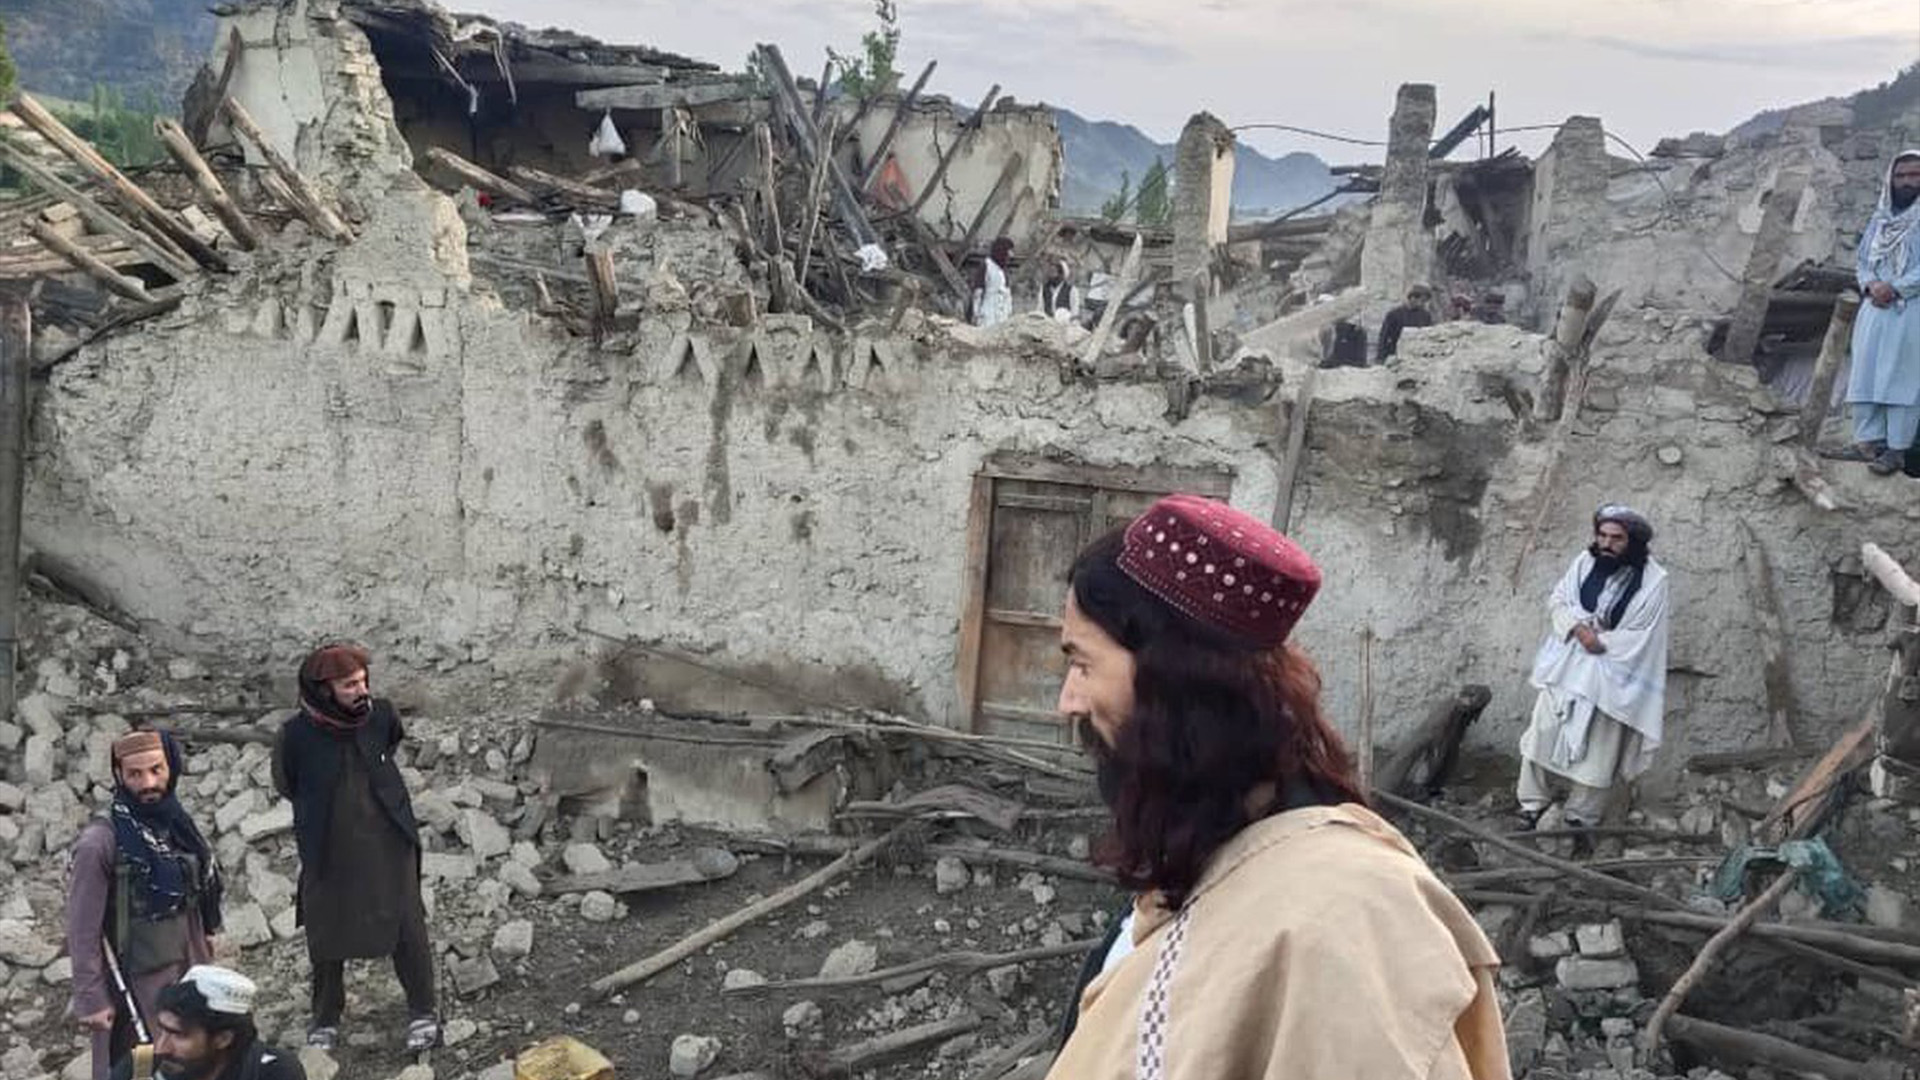 Un puissant tremblement de terre a frappé mercredi matin une région rurale et montagneuse de l'est de l'Afghanistan près de la frontière pakistanaise, tuant au moins 920 personnes et en blessant 600 autres, selon les autorités qui ont ajouté que le nombre de morts augmenterait probablement.